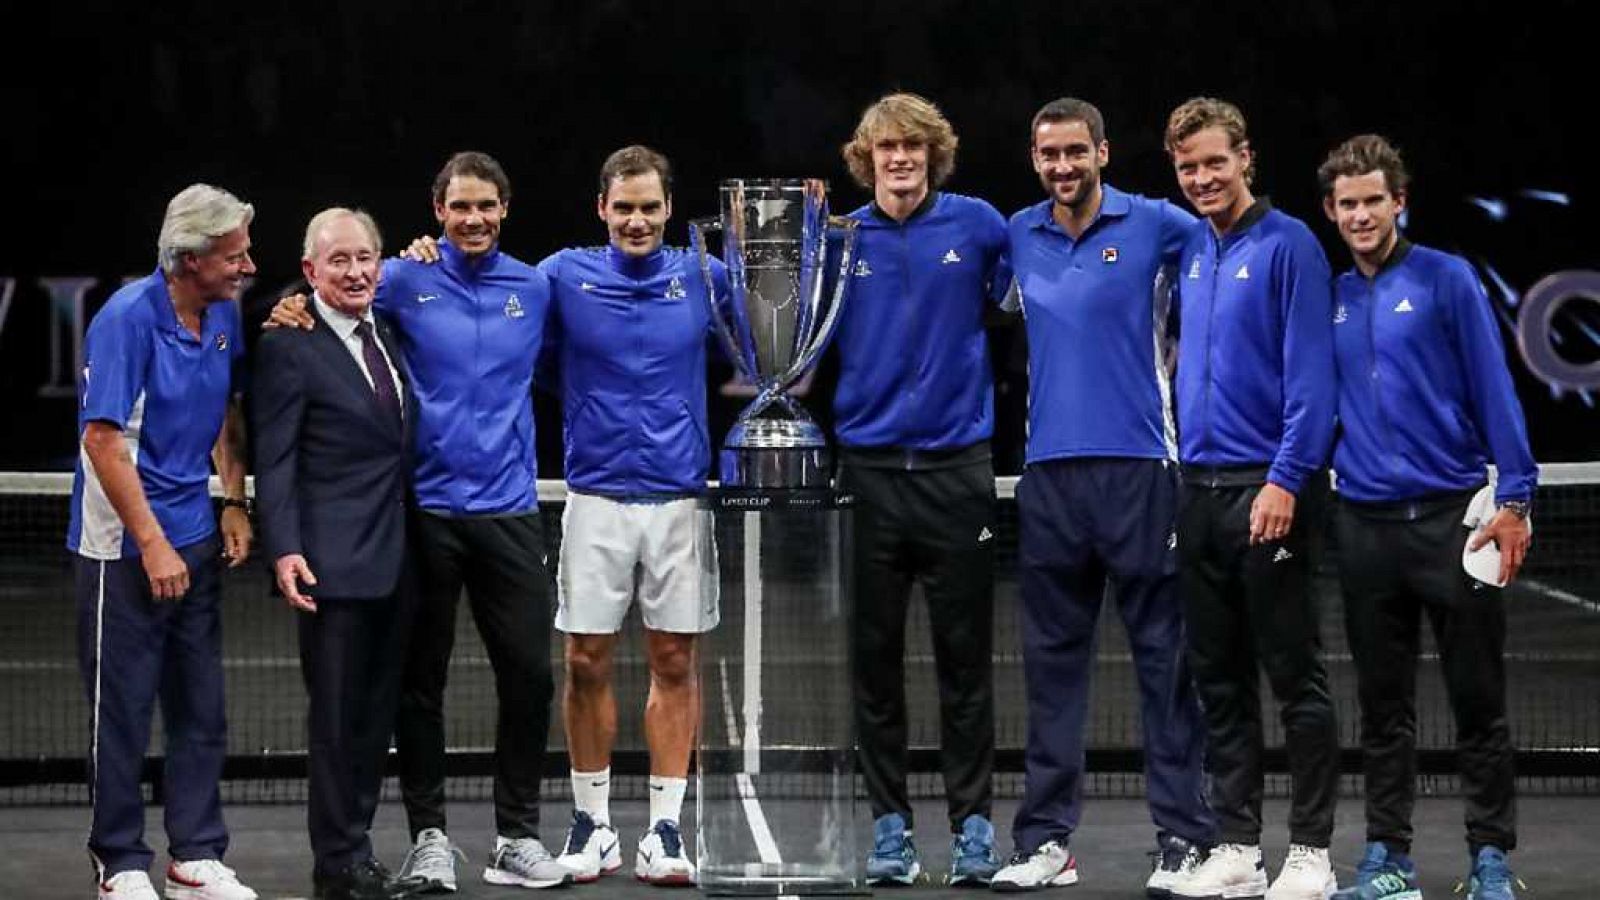 Tenis - Laver Cup 2017 Cuarto partido desde Praga: R.Federer - N.Kyrgios